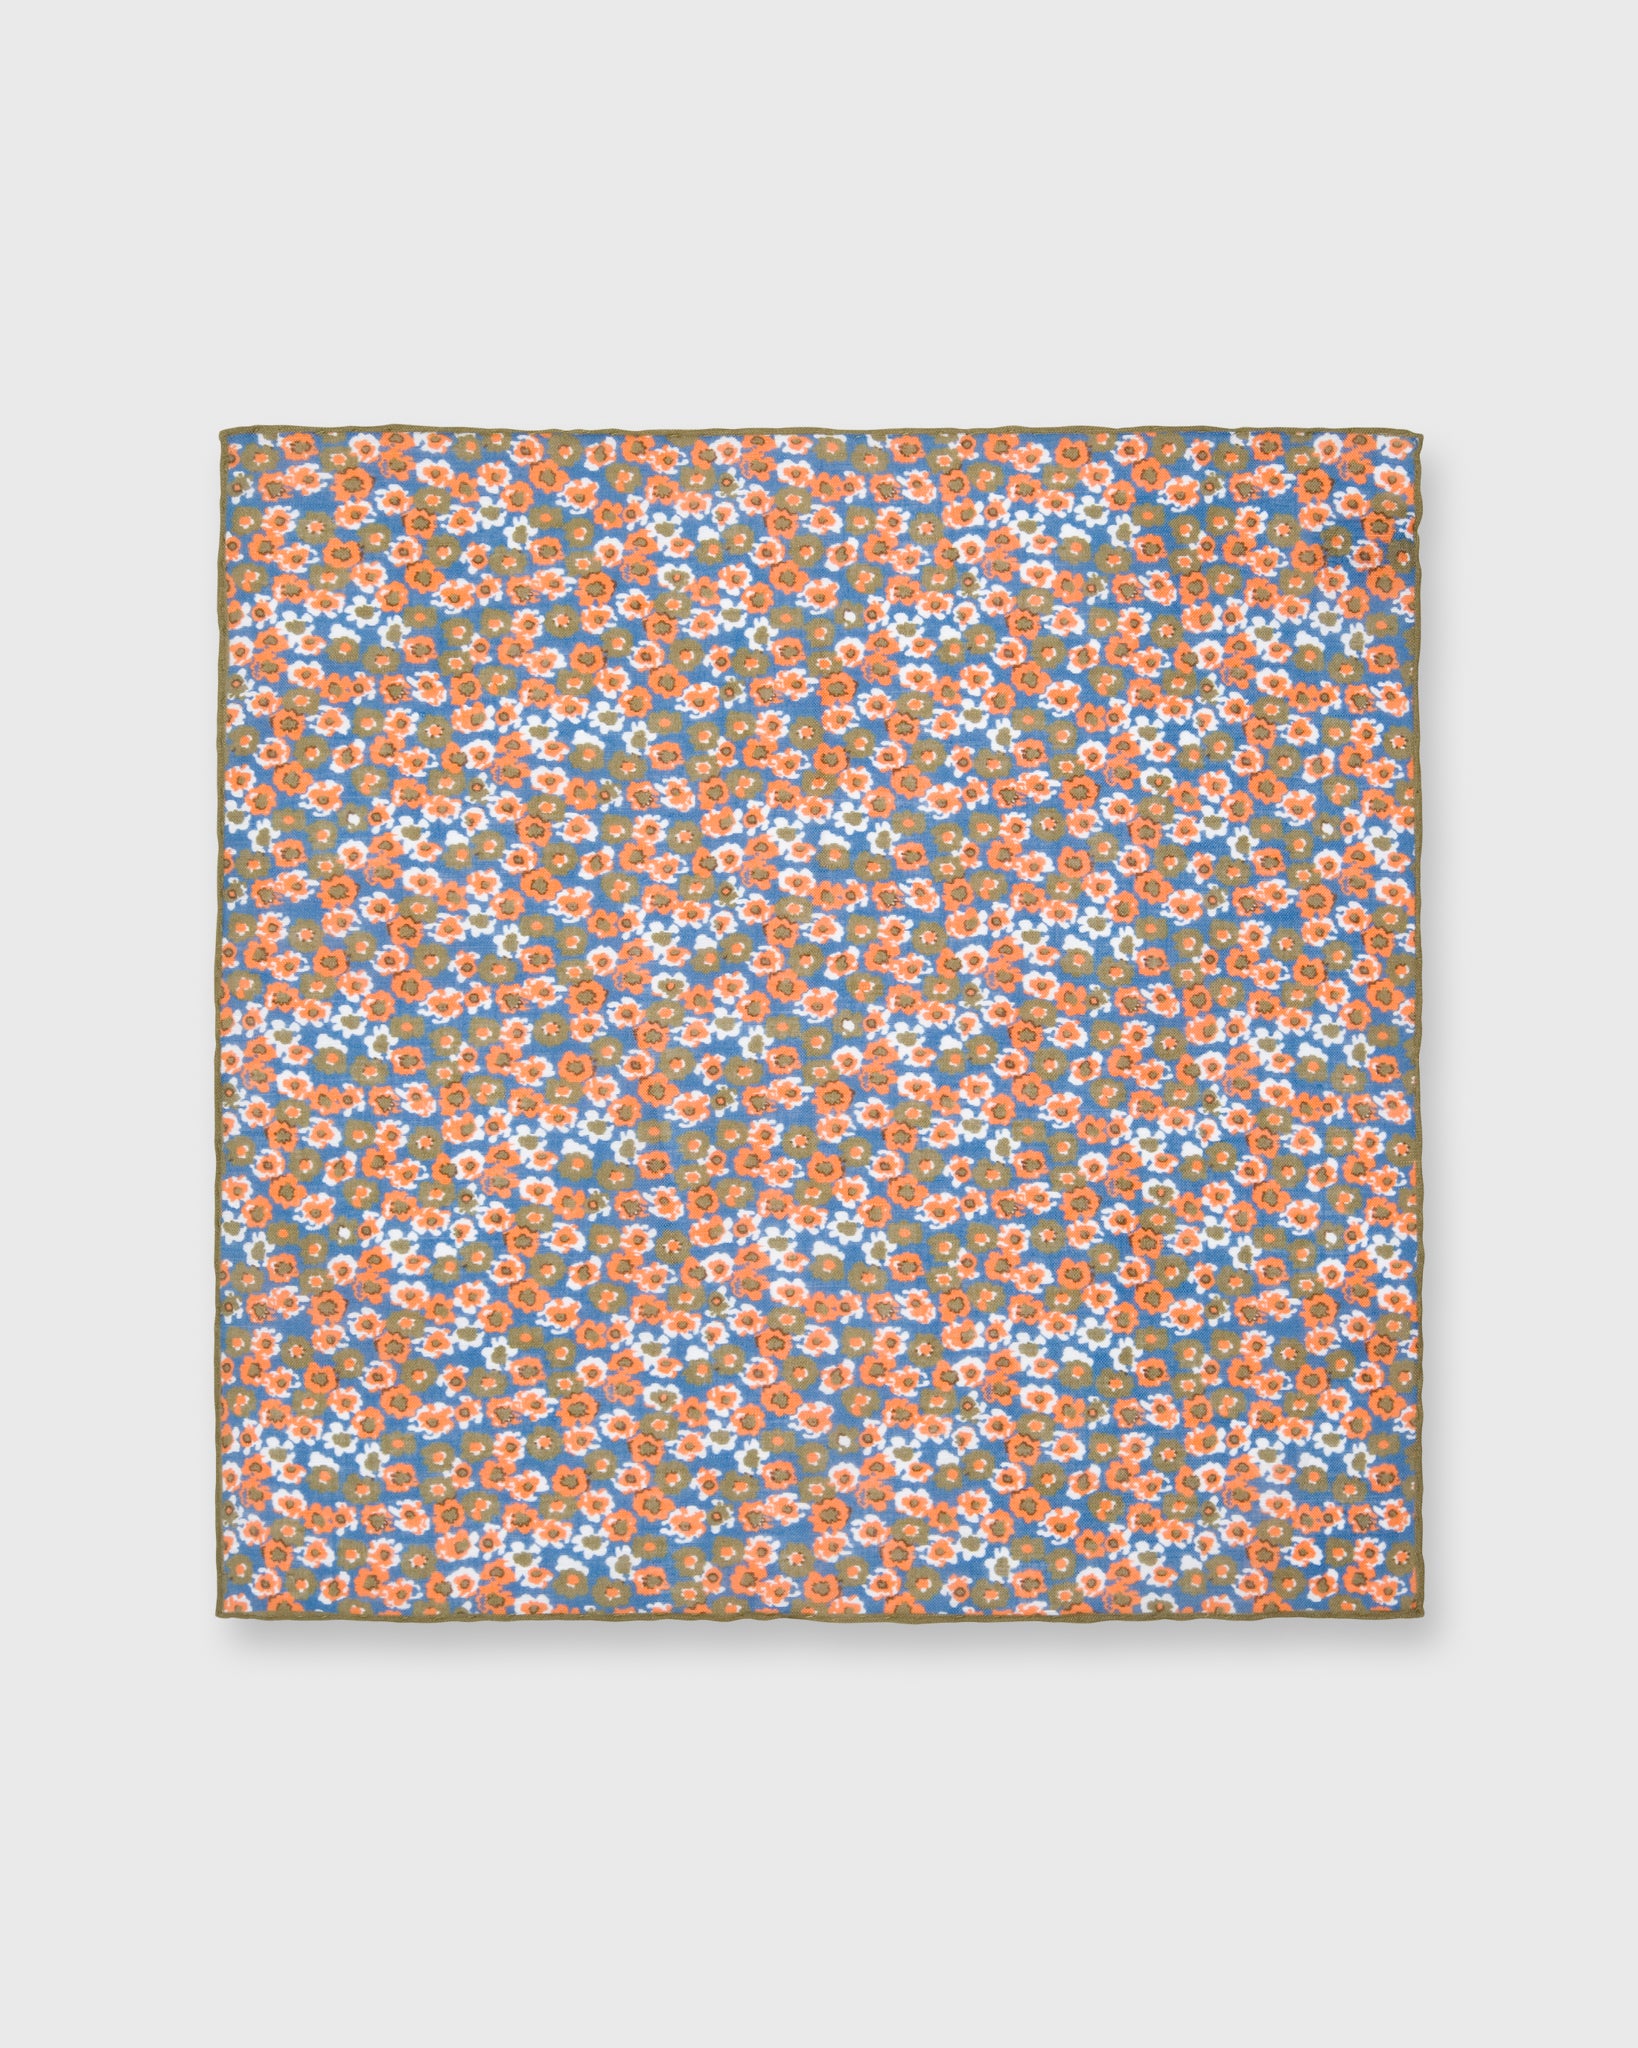 Cotton/Linen Print Pocket Square Blue/Olive/Orange Floral